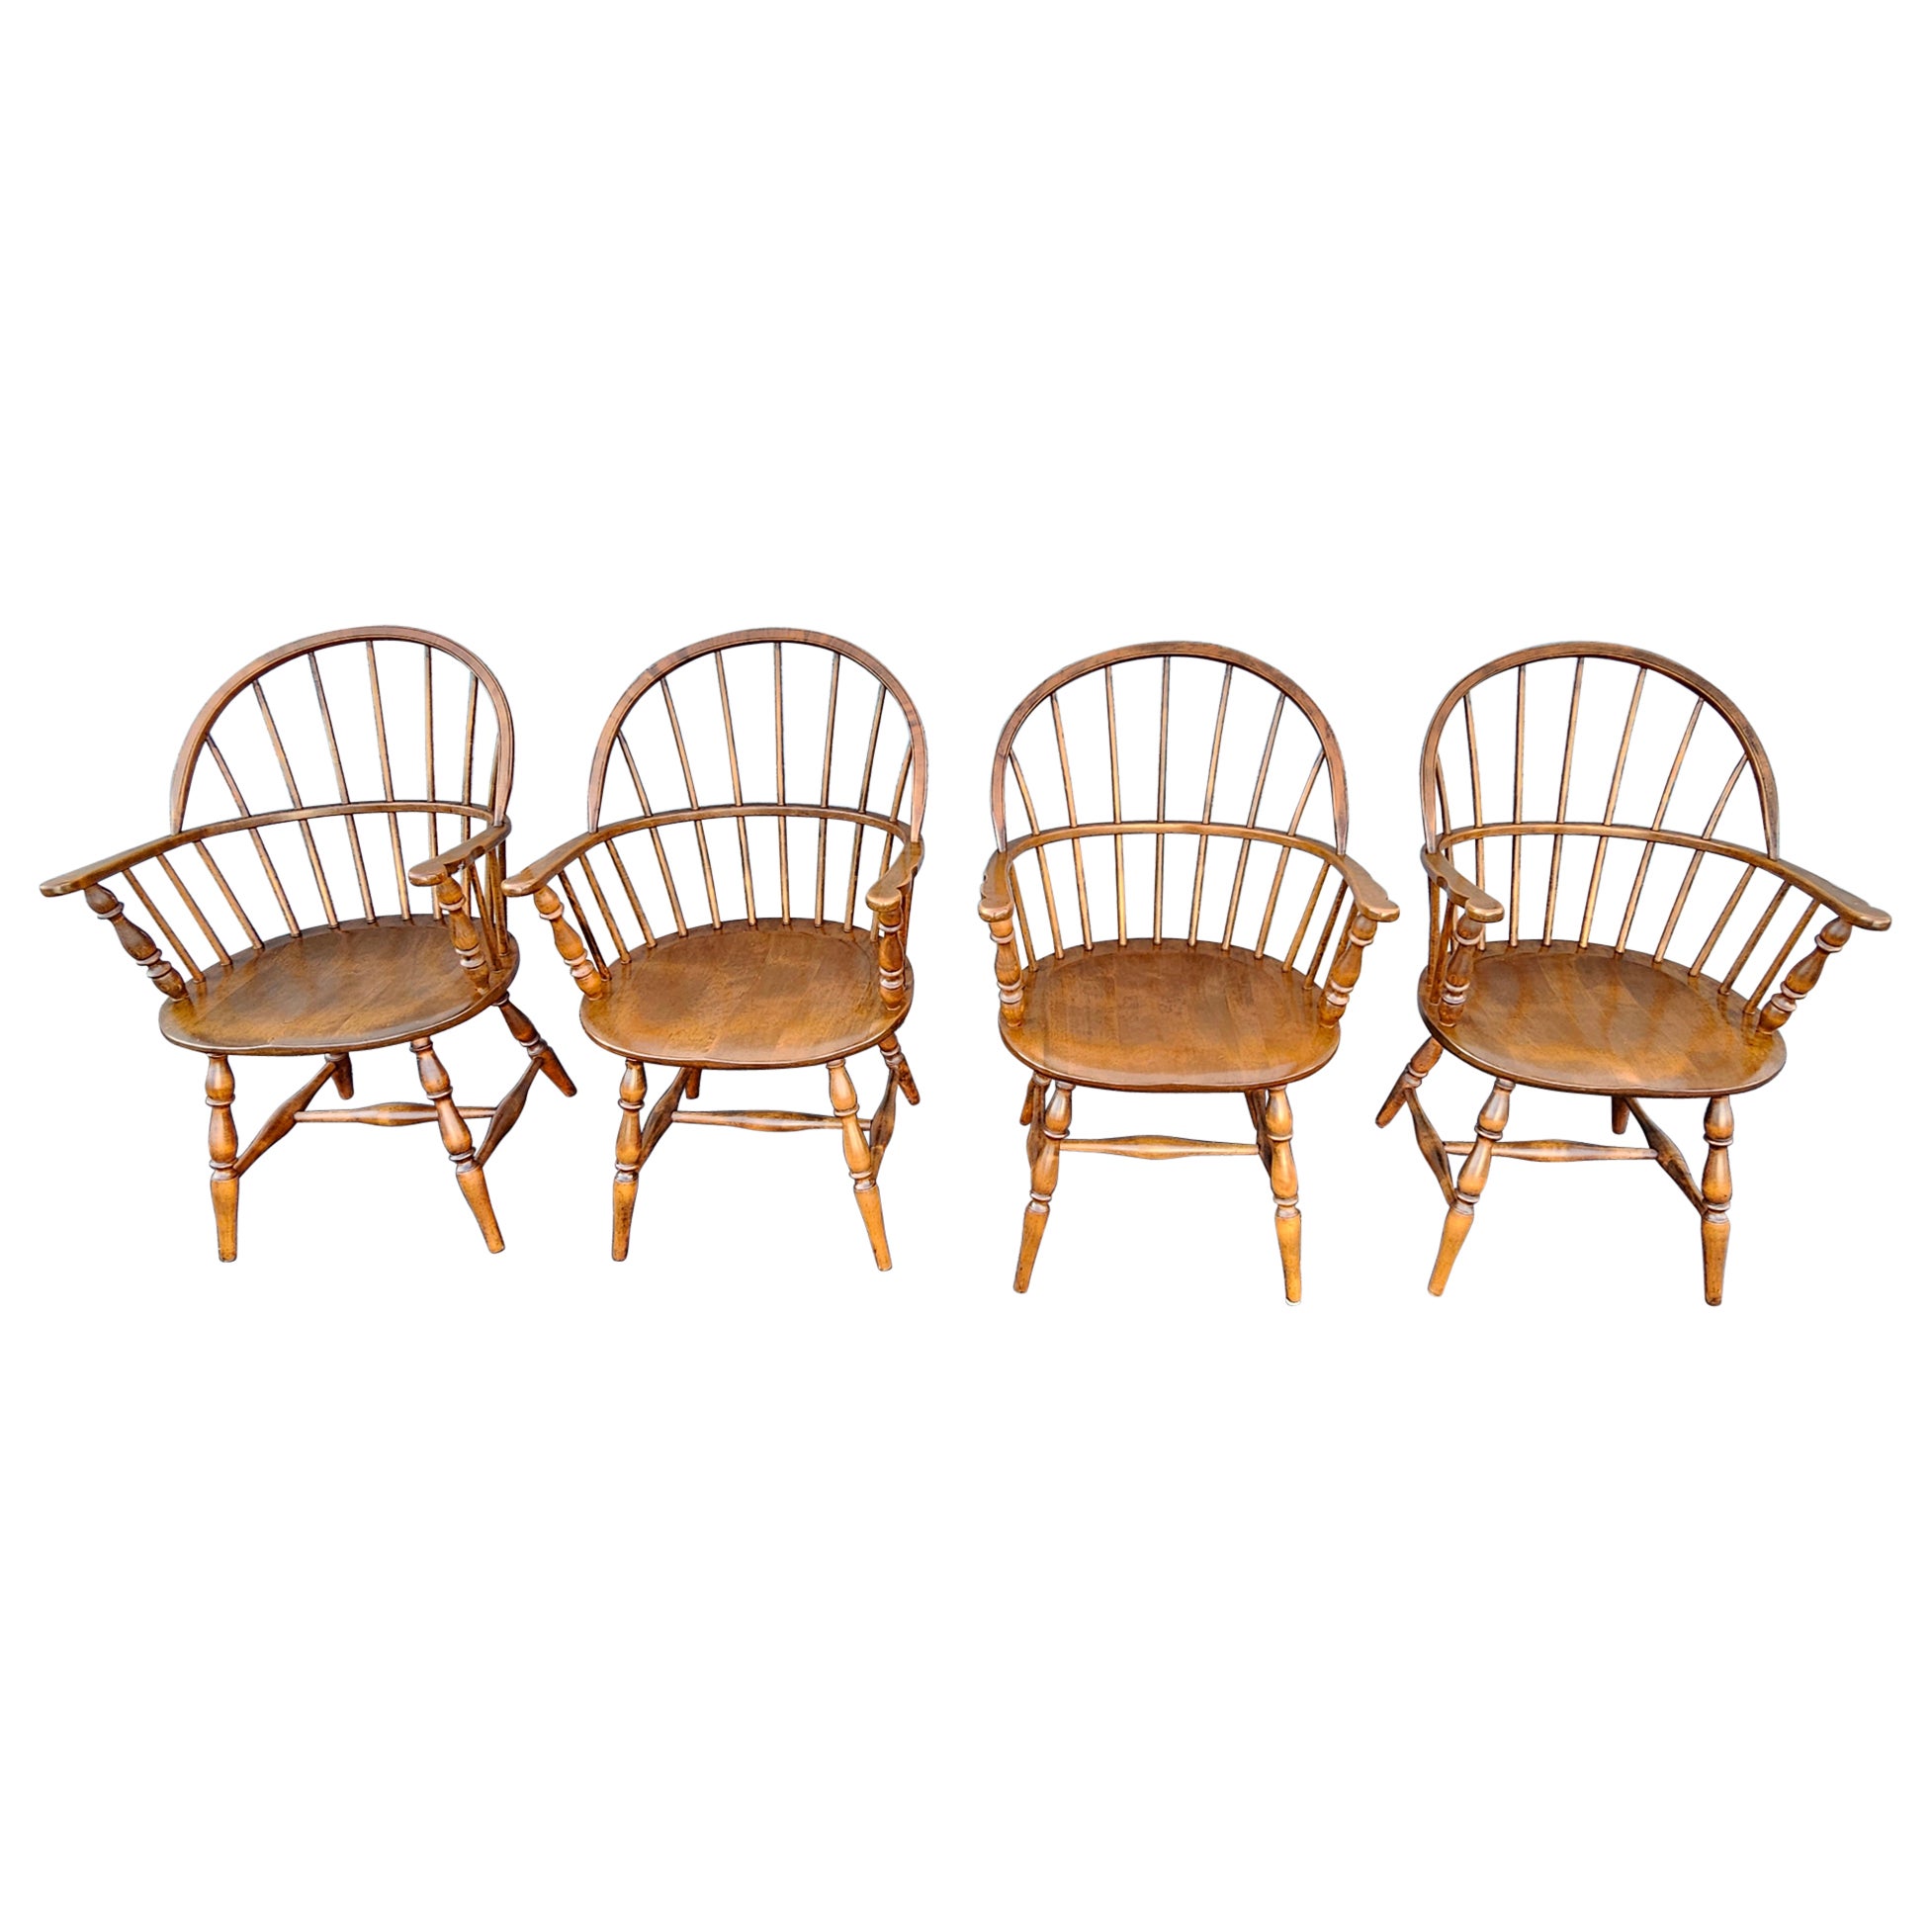 Ensemble de quatre fauteuils Windsor à dossier arrondi en érable, fabriqués à la main par les Amish